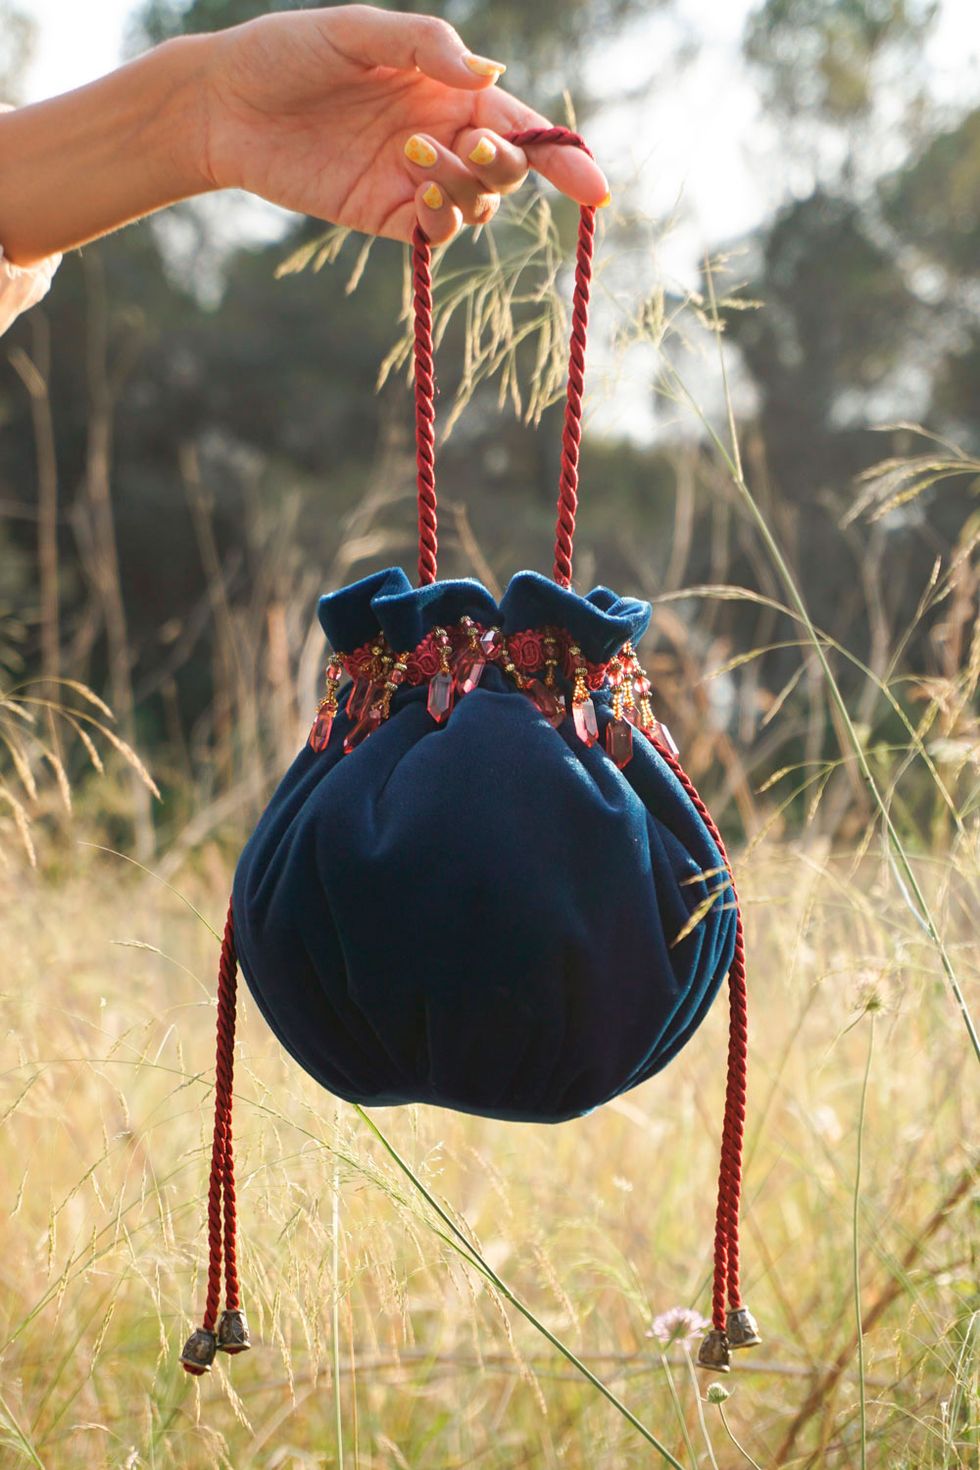 Estos son los bolsos de Parfois que no sabías hasta ahora que están  inspirados en marcas de lujo